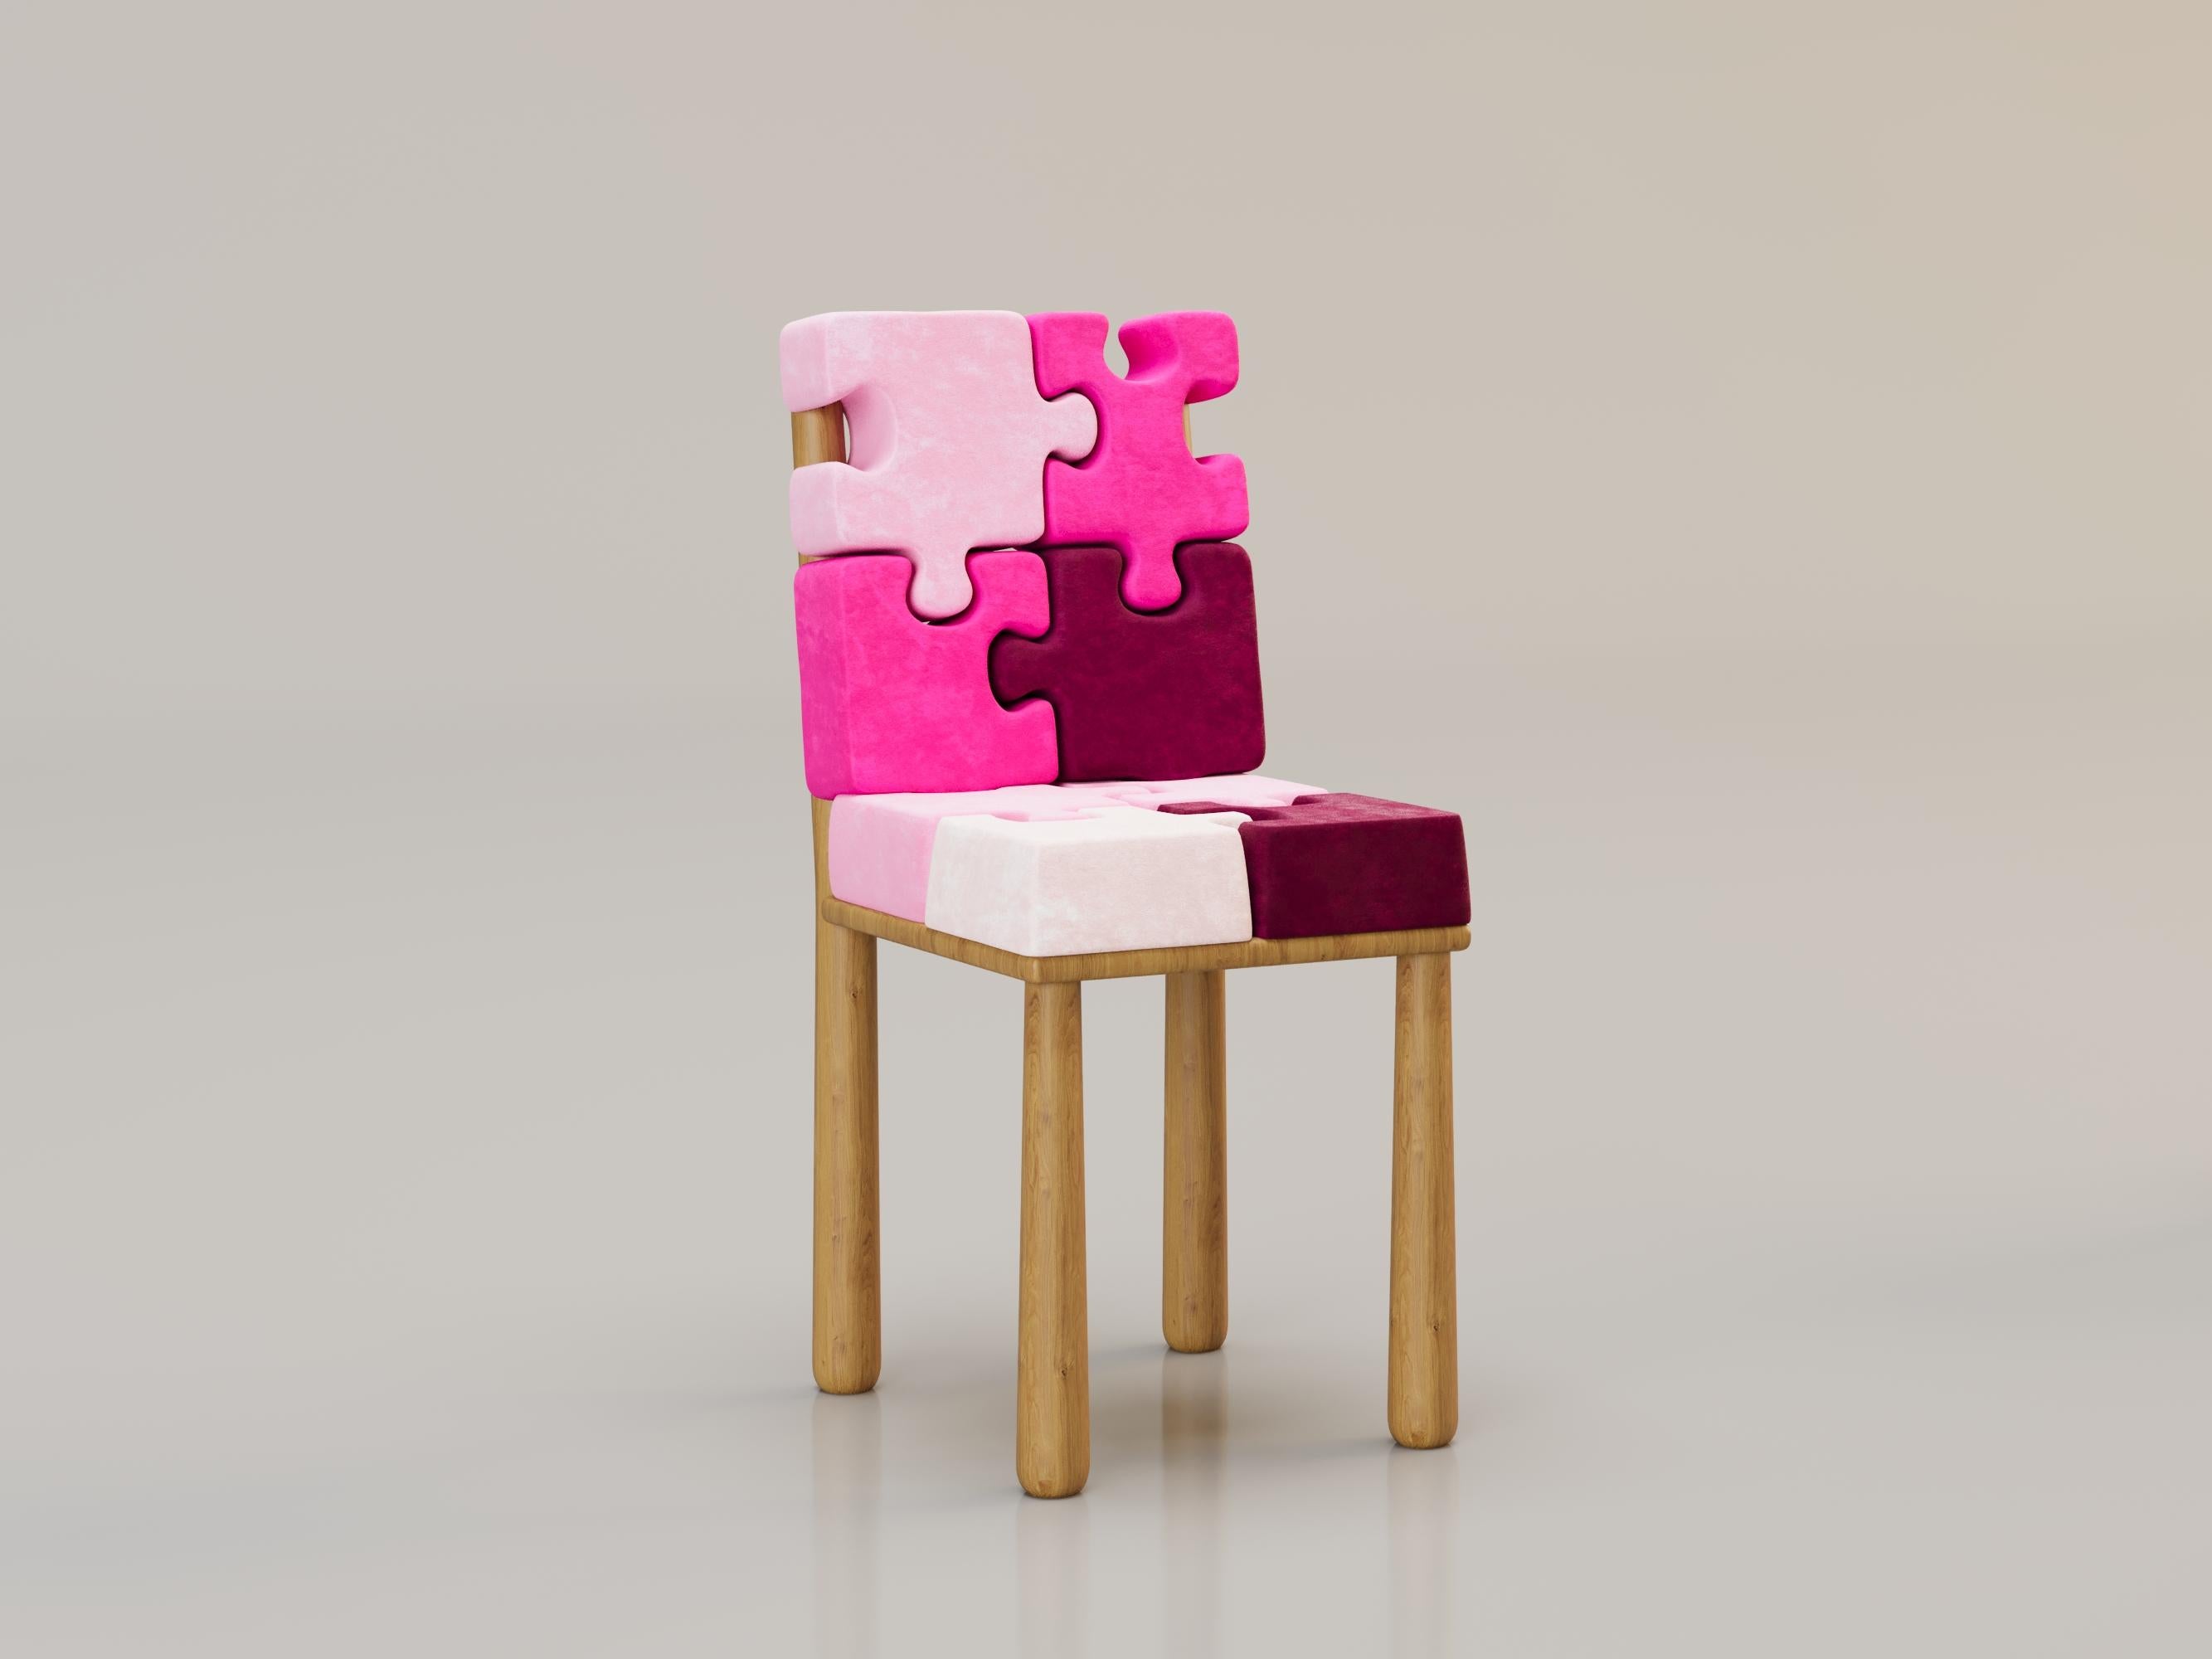 Chaise L'INSOLENTE d'Alexandre Ligios

Chêne et velours.

L 20 x L 20 X H 35 

Cette chaise au design contemporain est dotée d'une structure en chêne massif, qui apporte chaleur et solidité à votre espace. Son originalité réside dans son assise et